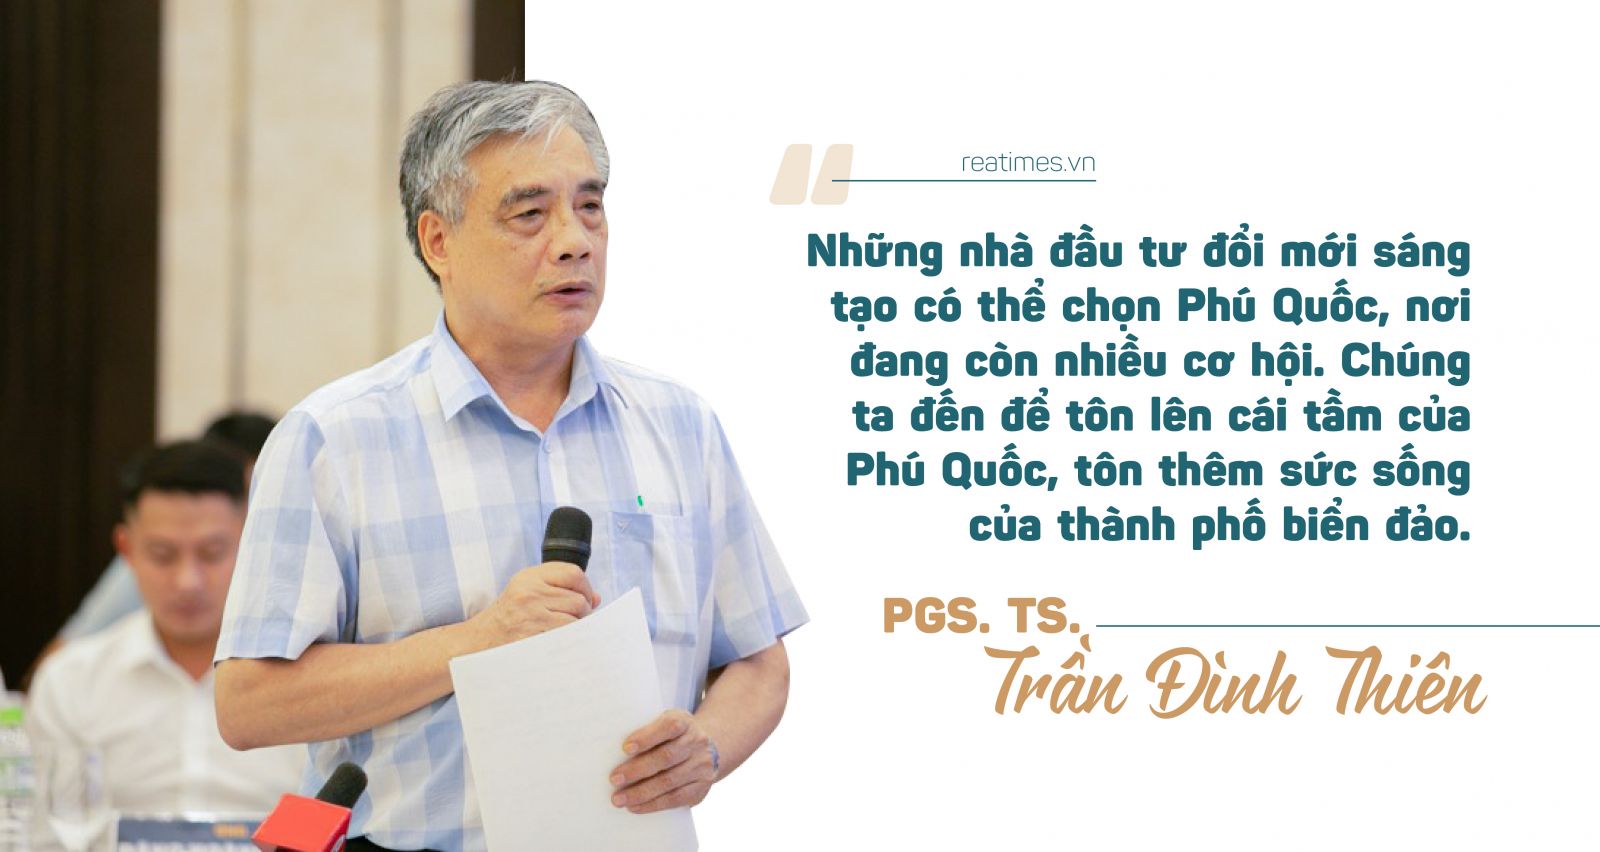 PGS.TS. Trần Đình Thiên